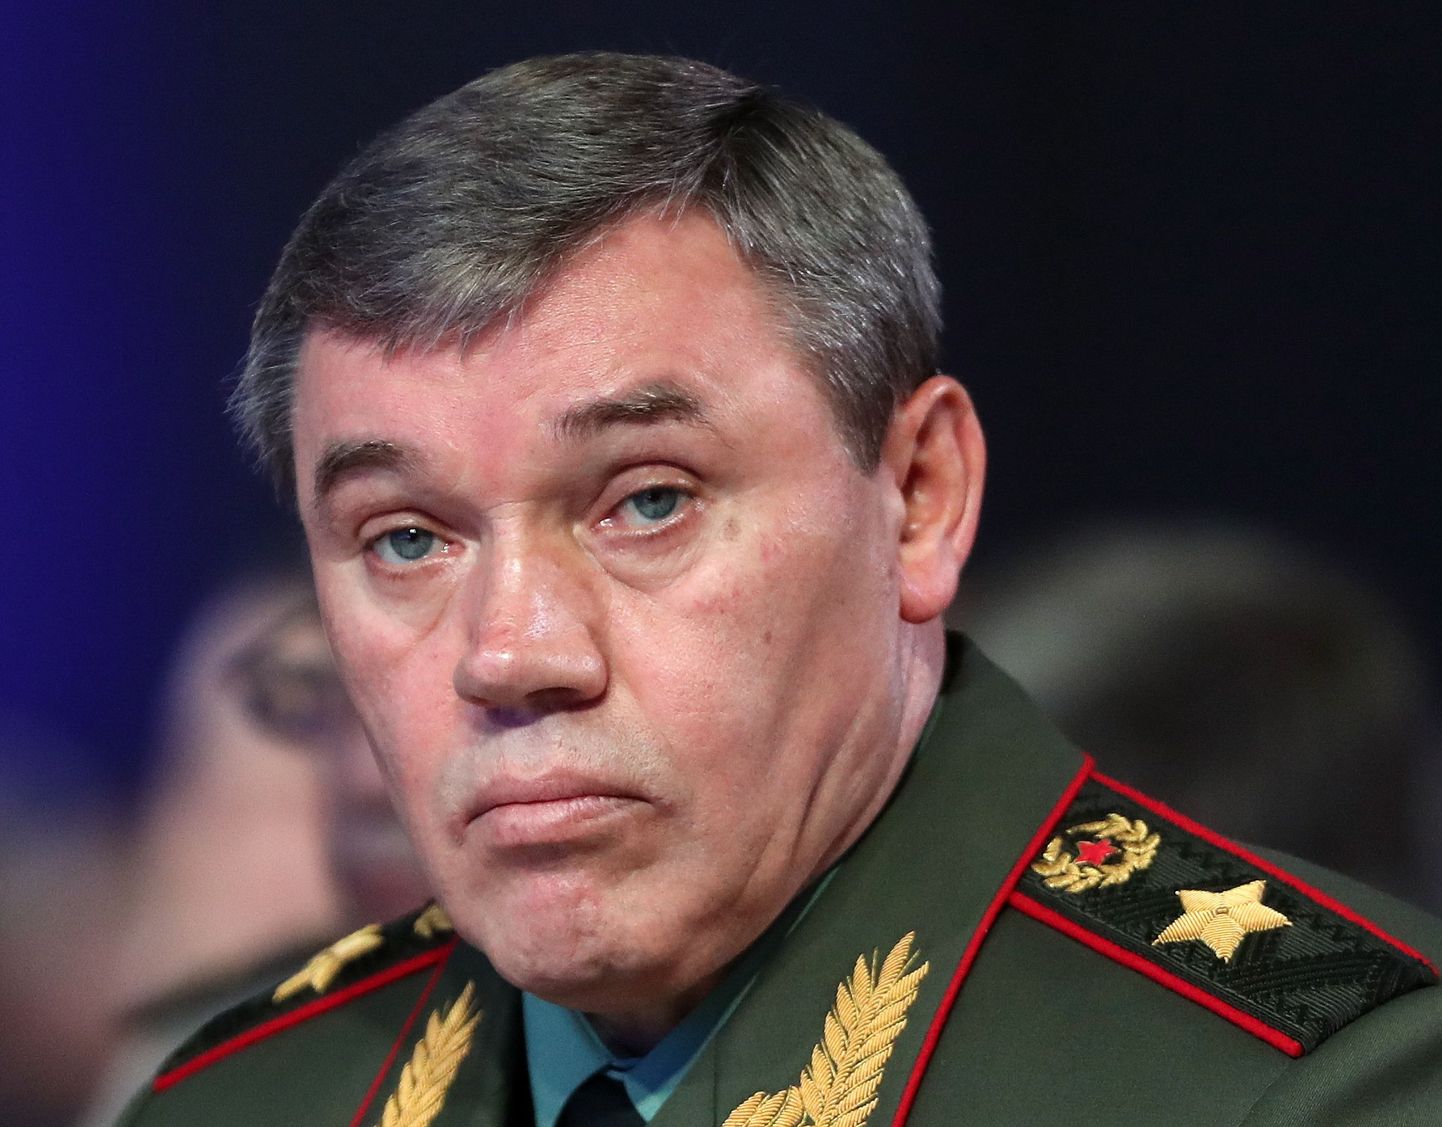 Vene kindral Valeri Gerassimov